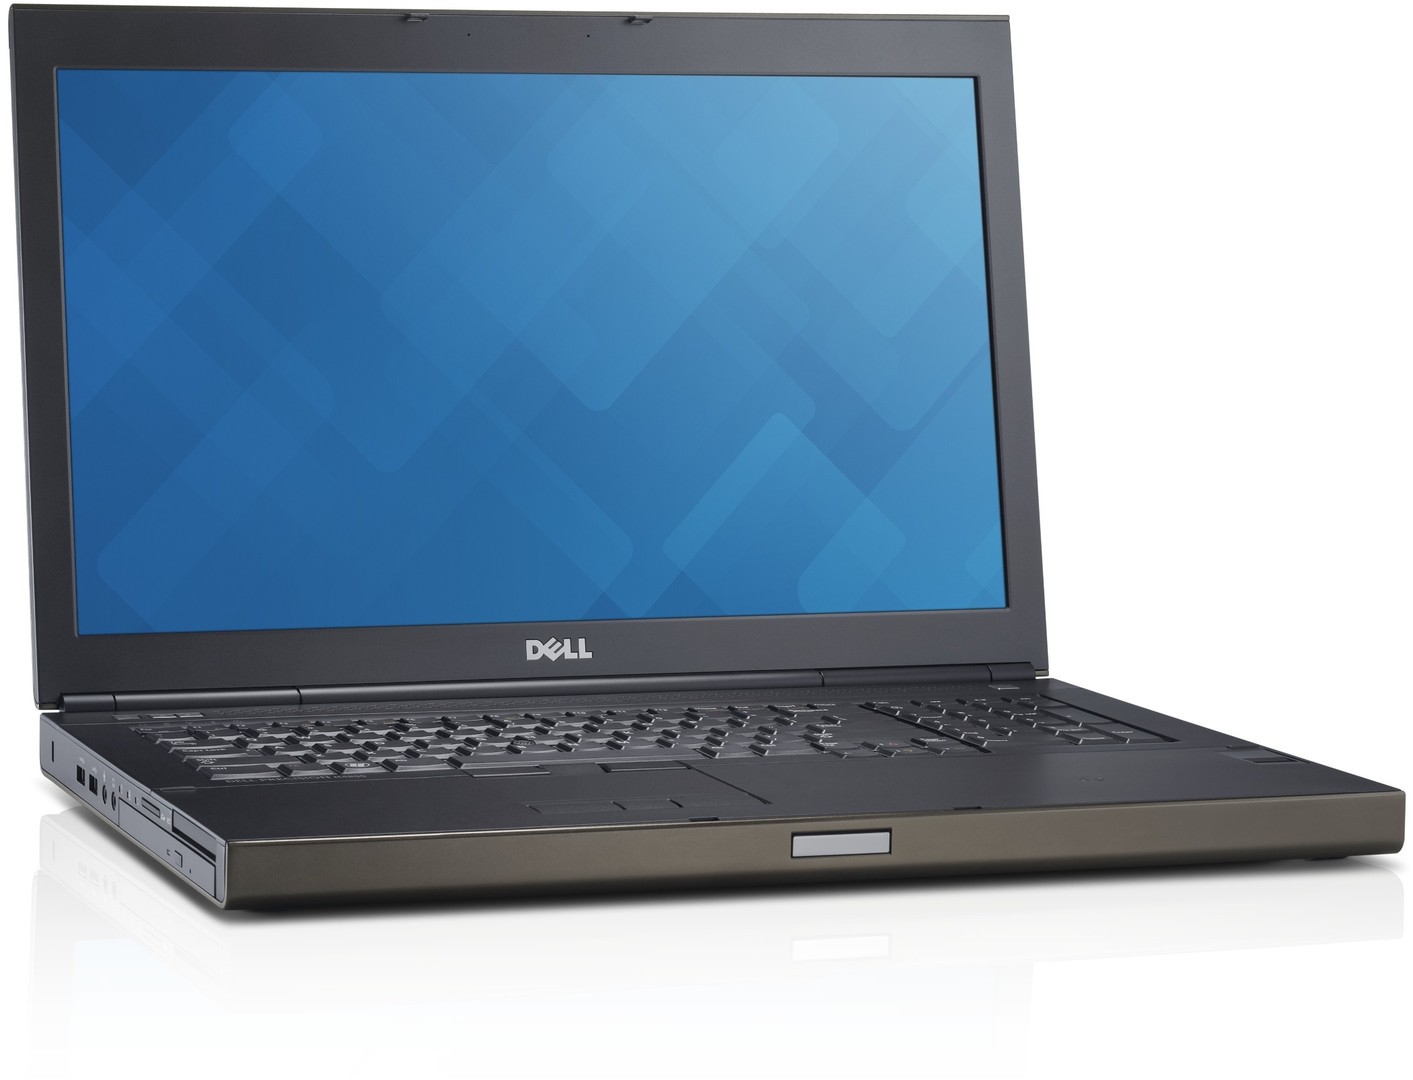 DEL-M6800-I7-Dell Precision M6800 Workstation Laptop Core i7 500 GB Hybrid Drive 8 GB RAM 17.3-inch Windows 10 Pro-image